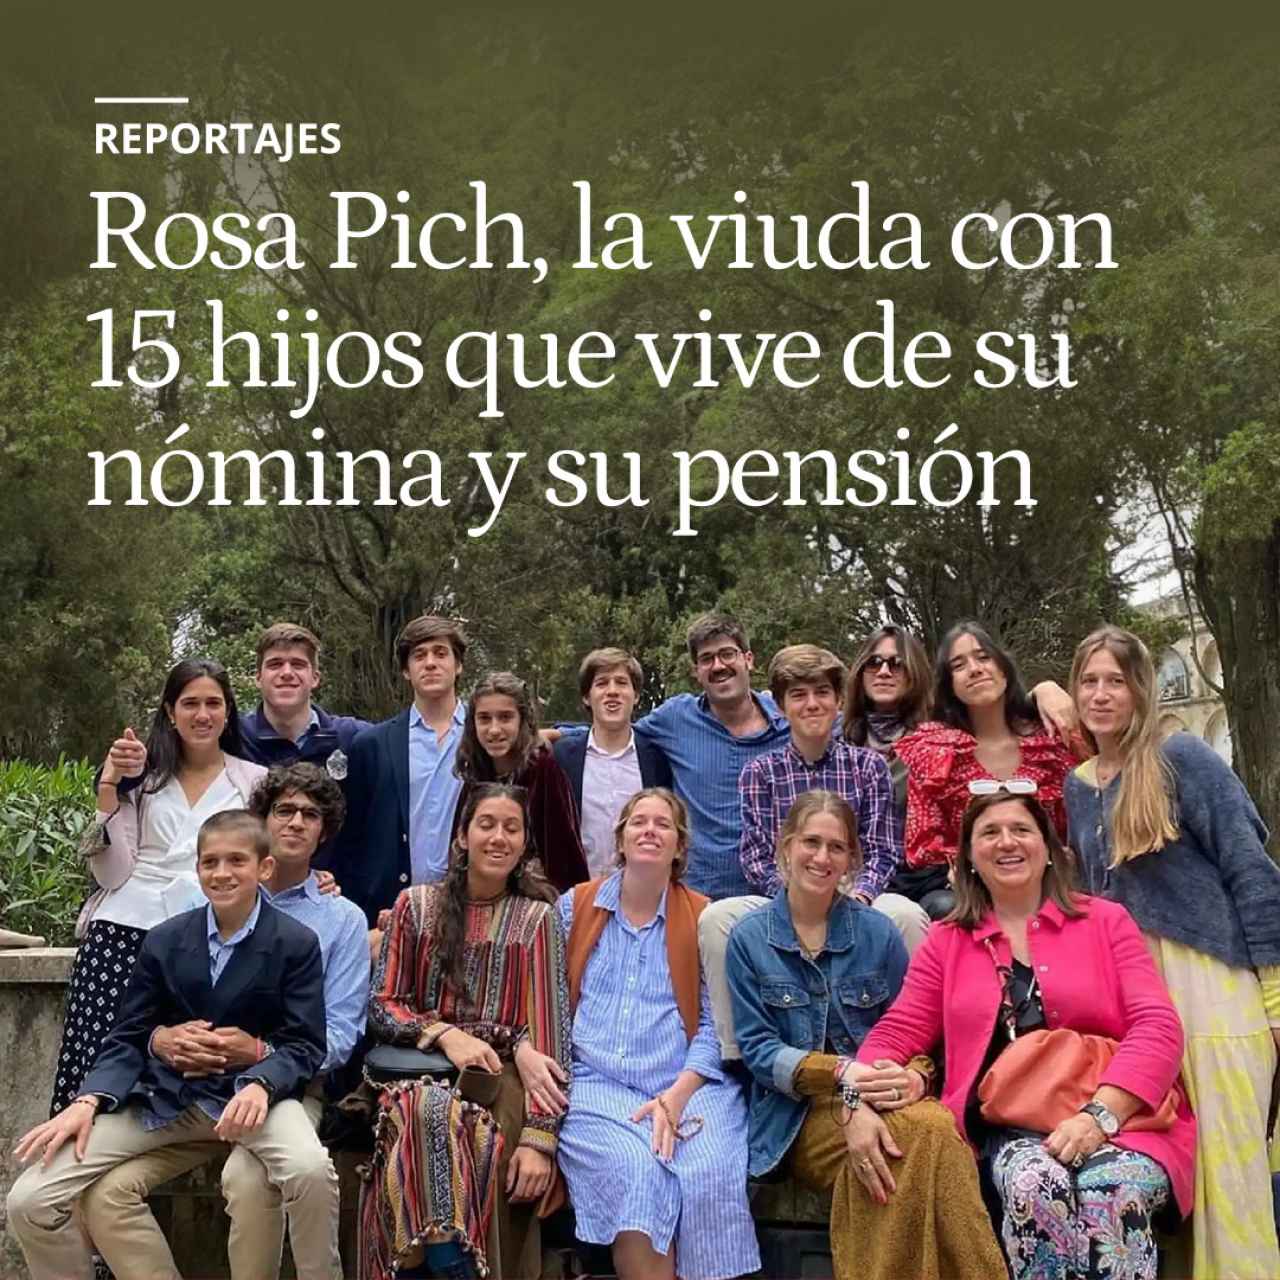 Rosa Pich, la viuda con 15 hijos a su cargo que vive de su nómina y su pensión: "Soy un espécimen único"